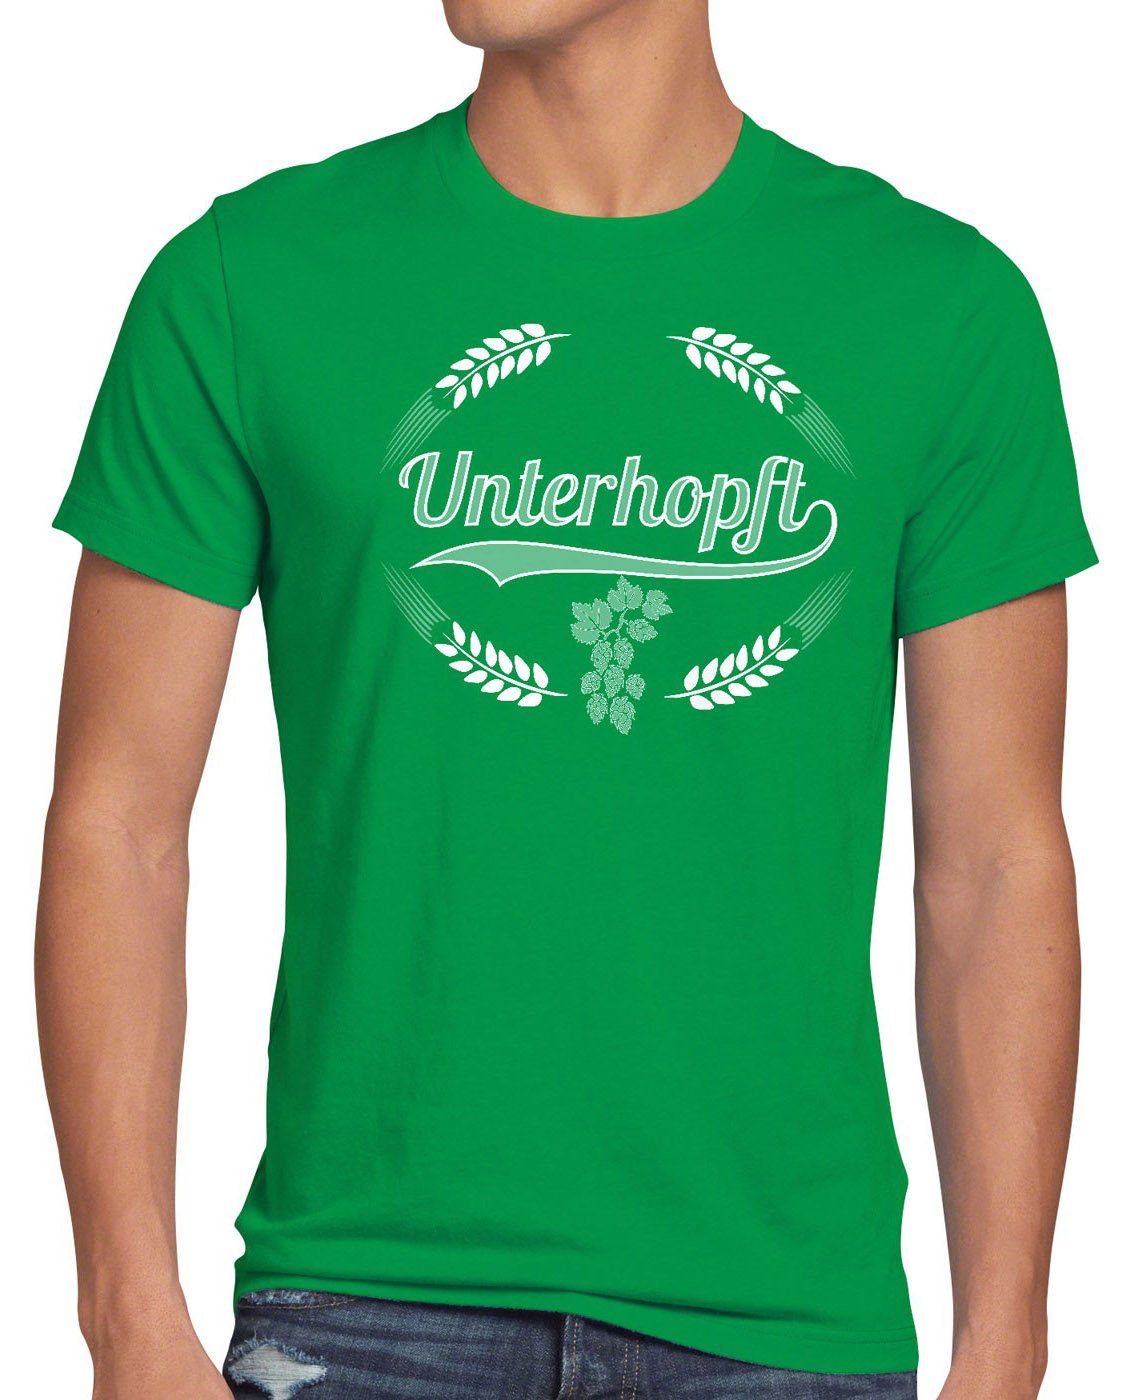 style3 Print-Shirt Herren T-Shirt Unterhopft Kult Shirt Funshirt Bier Hopfen Spruch Fun Malz Fest grün